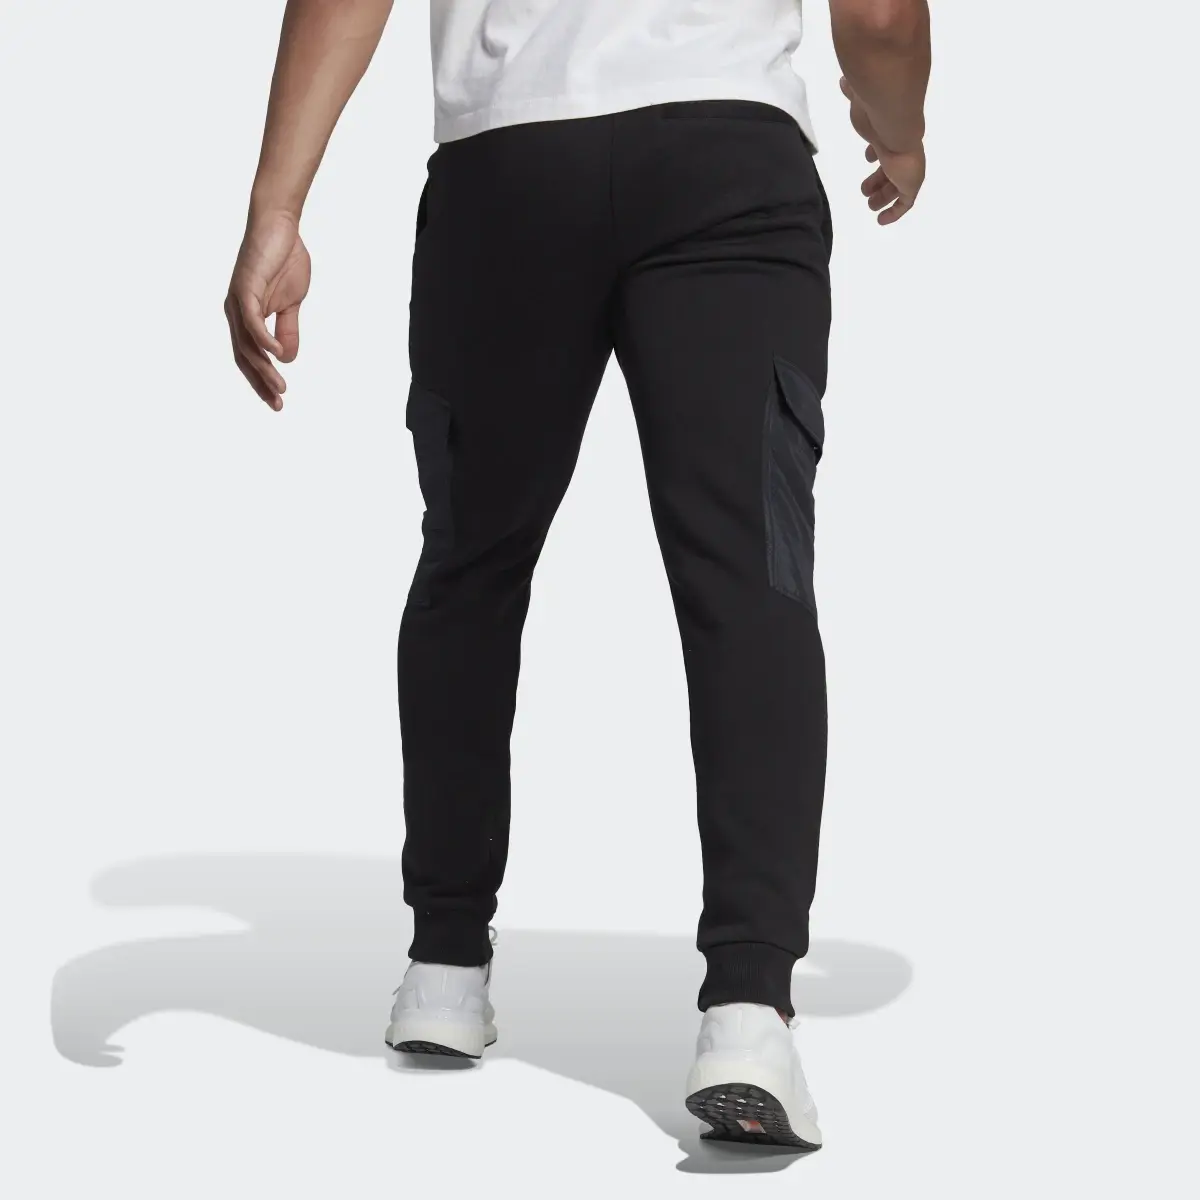 Adidas Fleece Woven Pants. 2